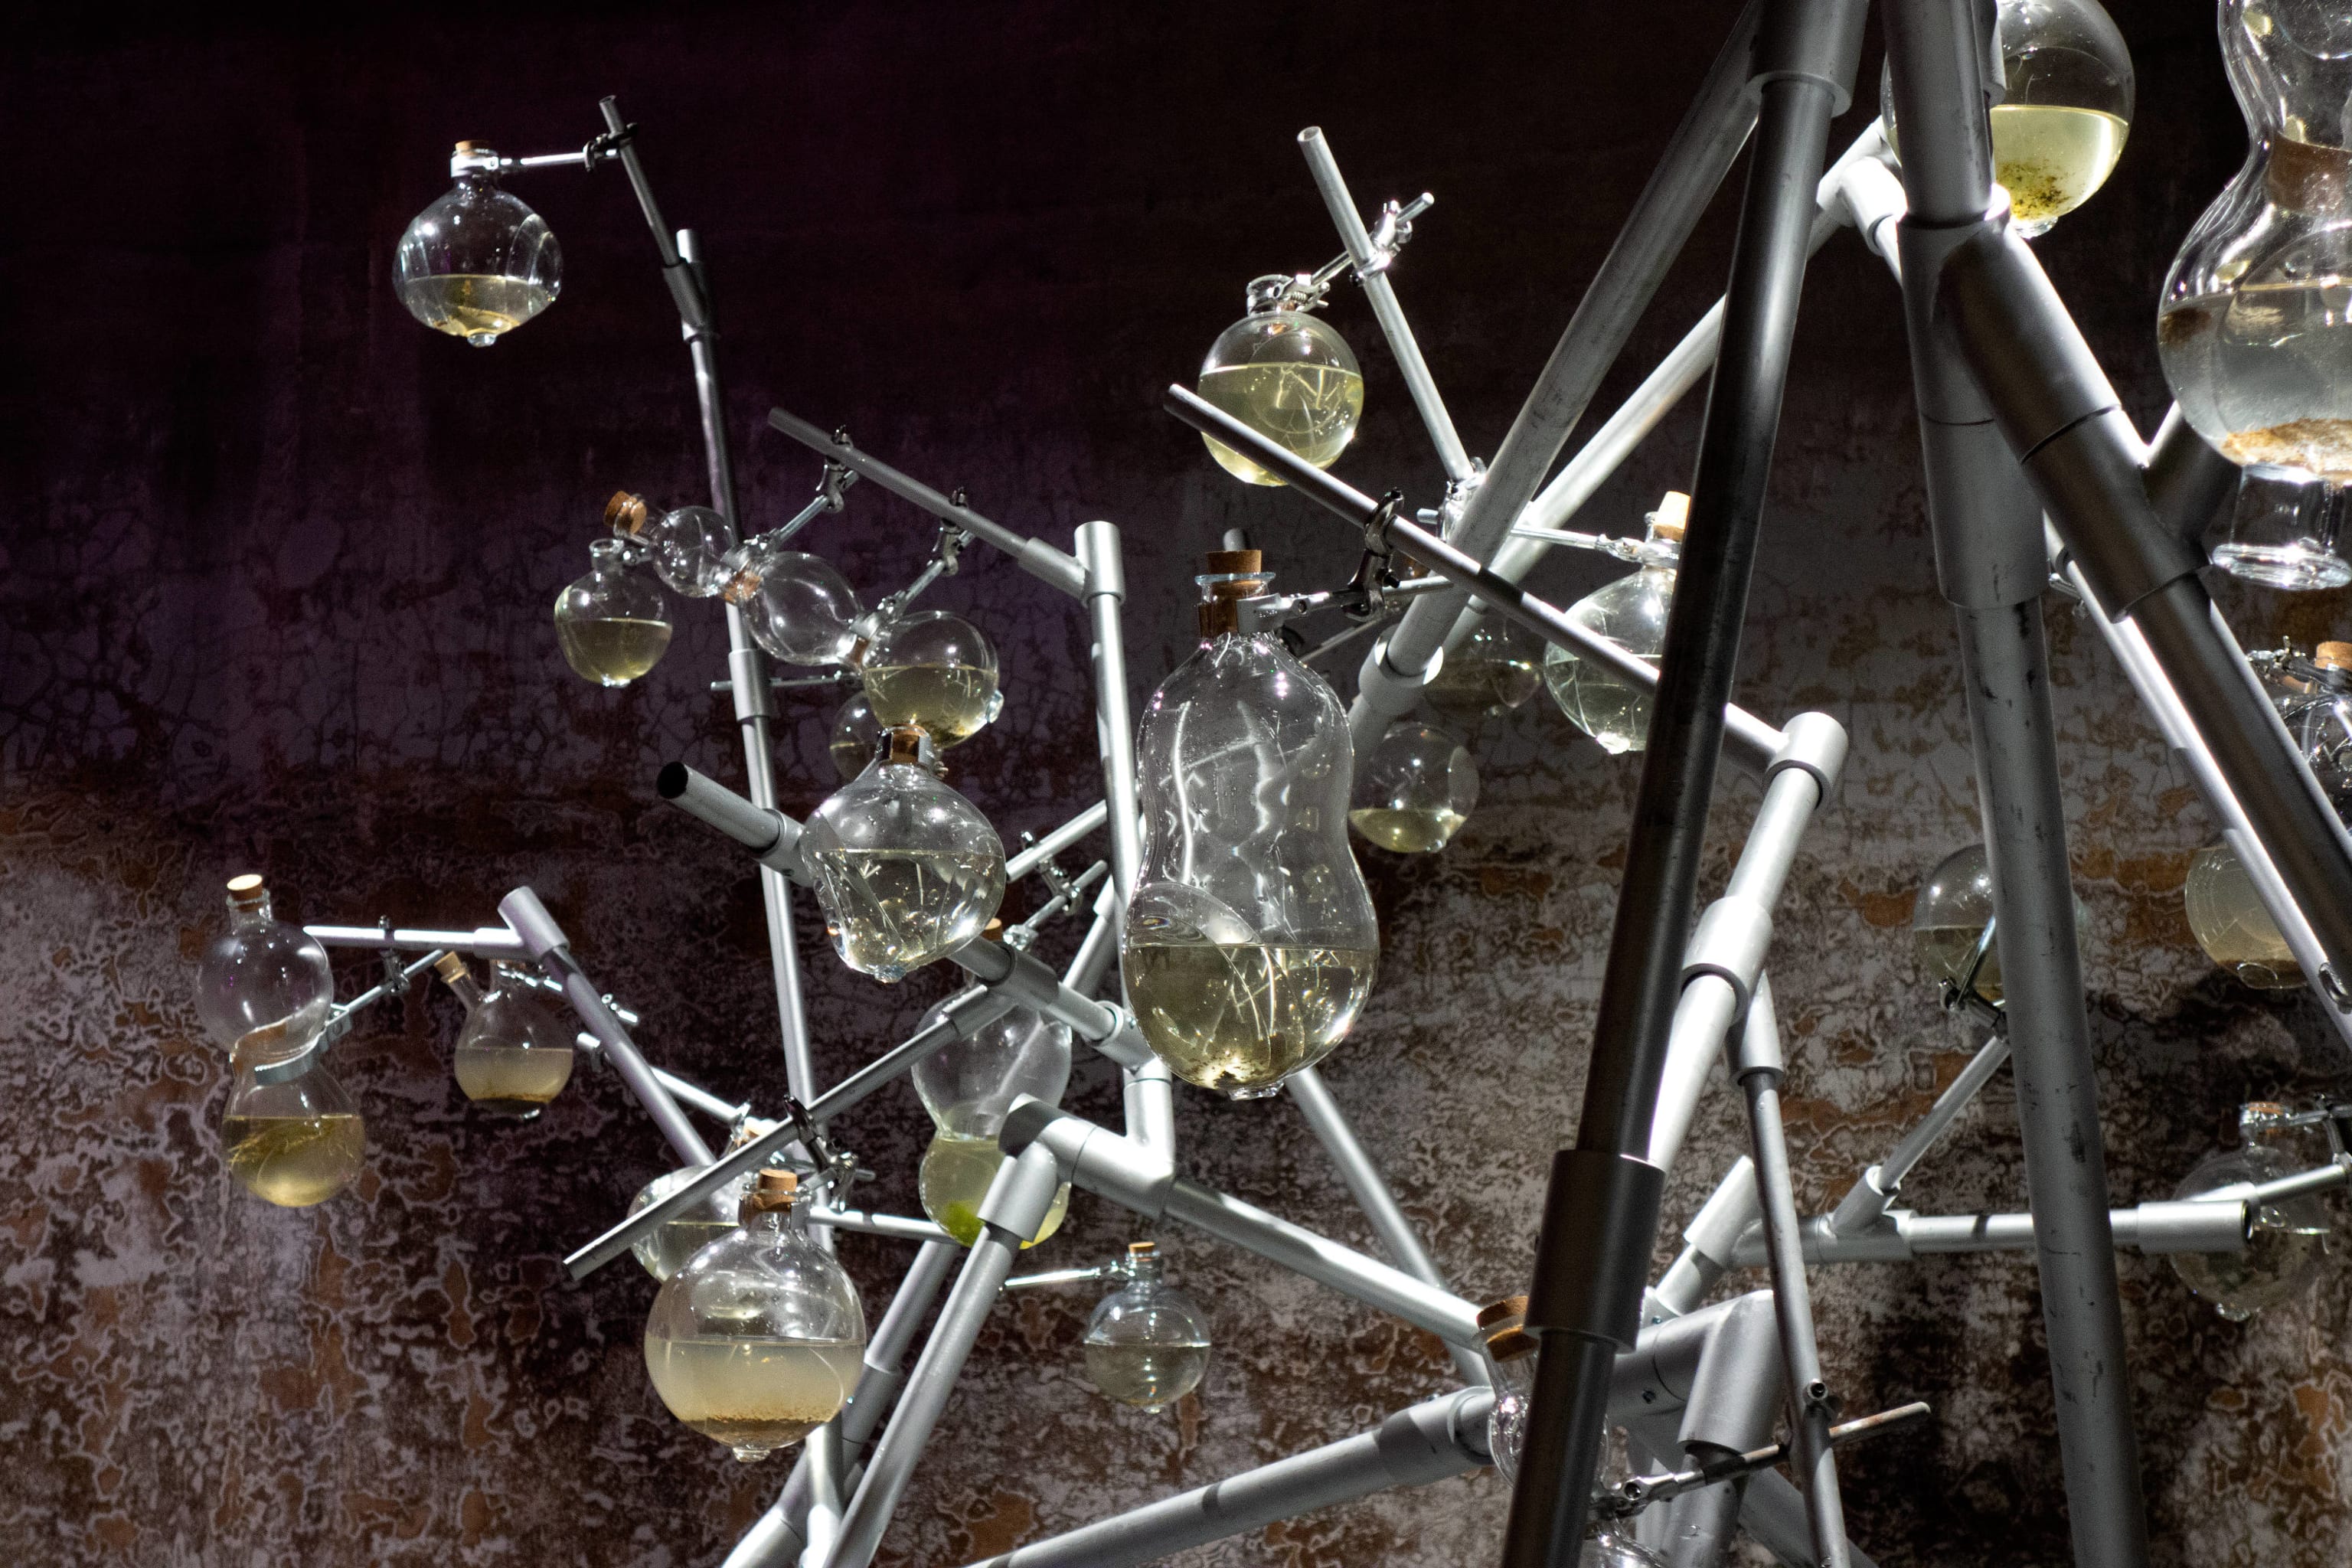 &#171;Liquid Properties&#187;
2018
Installasjon med glass, st&#229;l, vann med mikroorganismer.
Samarbeid med Marjolijn Dijkman. Opprinnelig laget for Munchmuseet i Bevegelse.
Installasjonsbilde fra RADIUS CCA, Delft.
Foto: Toril Johannessen